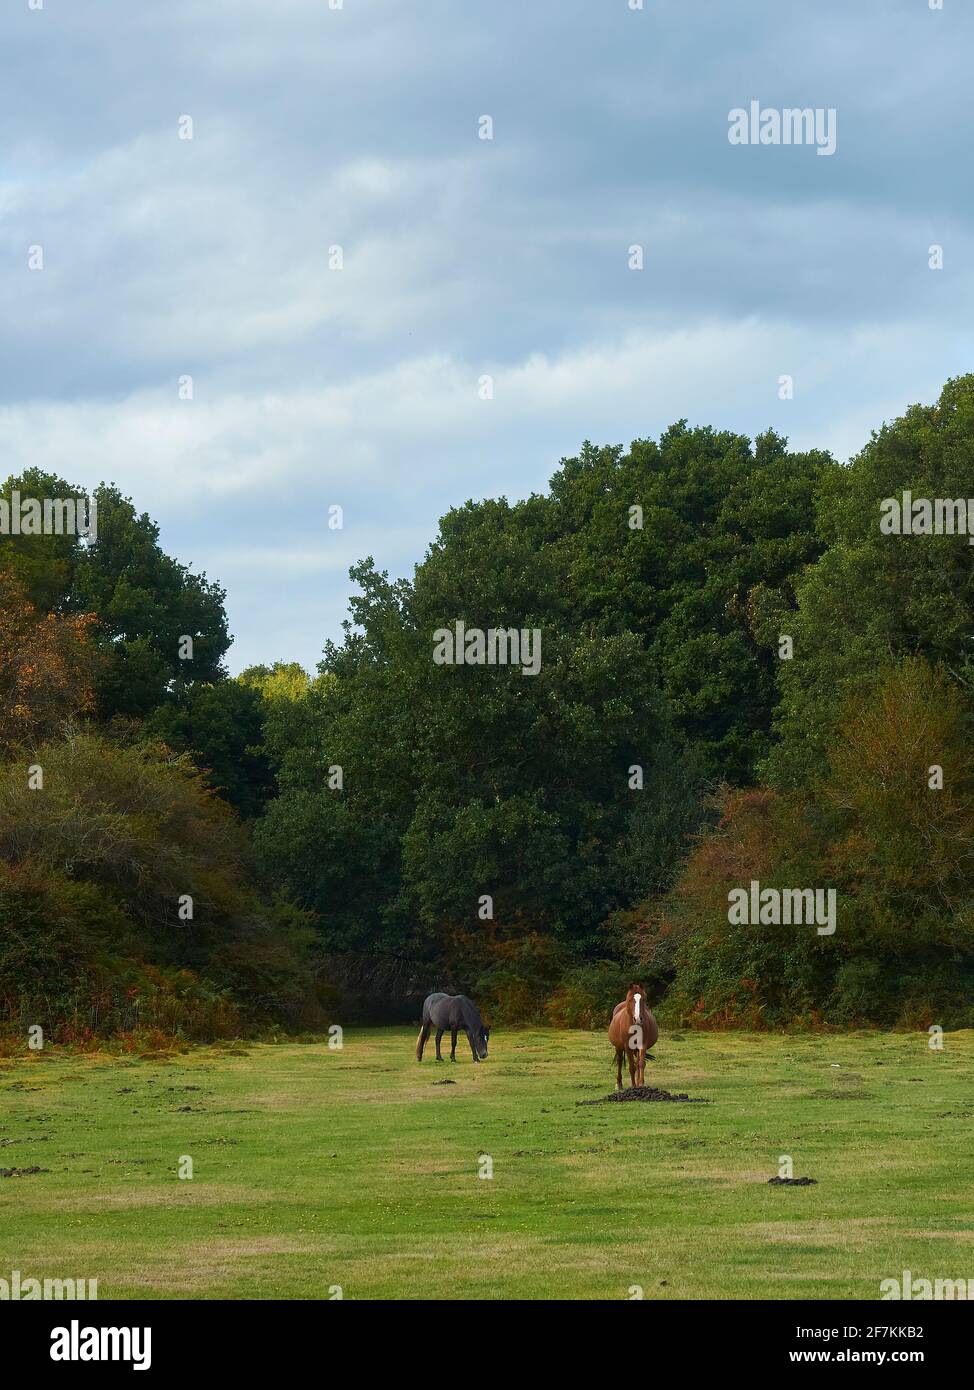 Un paio di pony emblematici e semi-selvaggi della New Forest che emergono dagli alberi in una grande e erbosa radura davanti a alberi maturi e toccati in autunno. Foto Stock